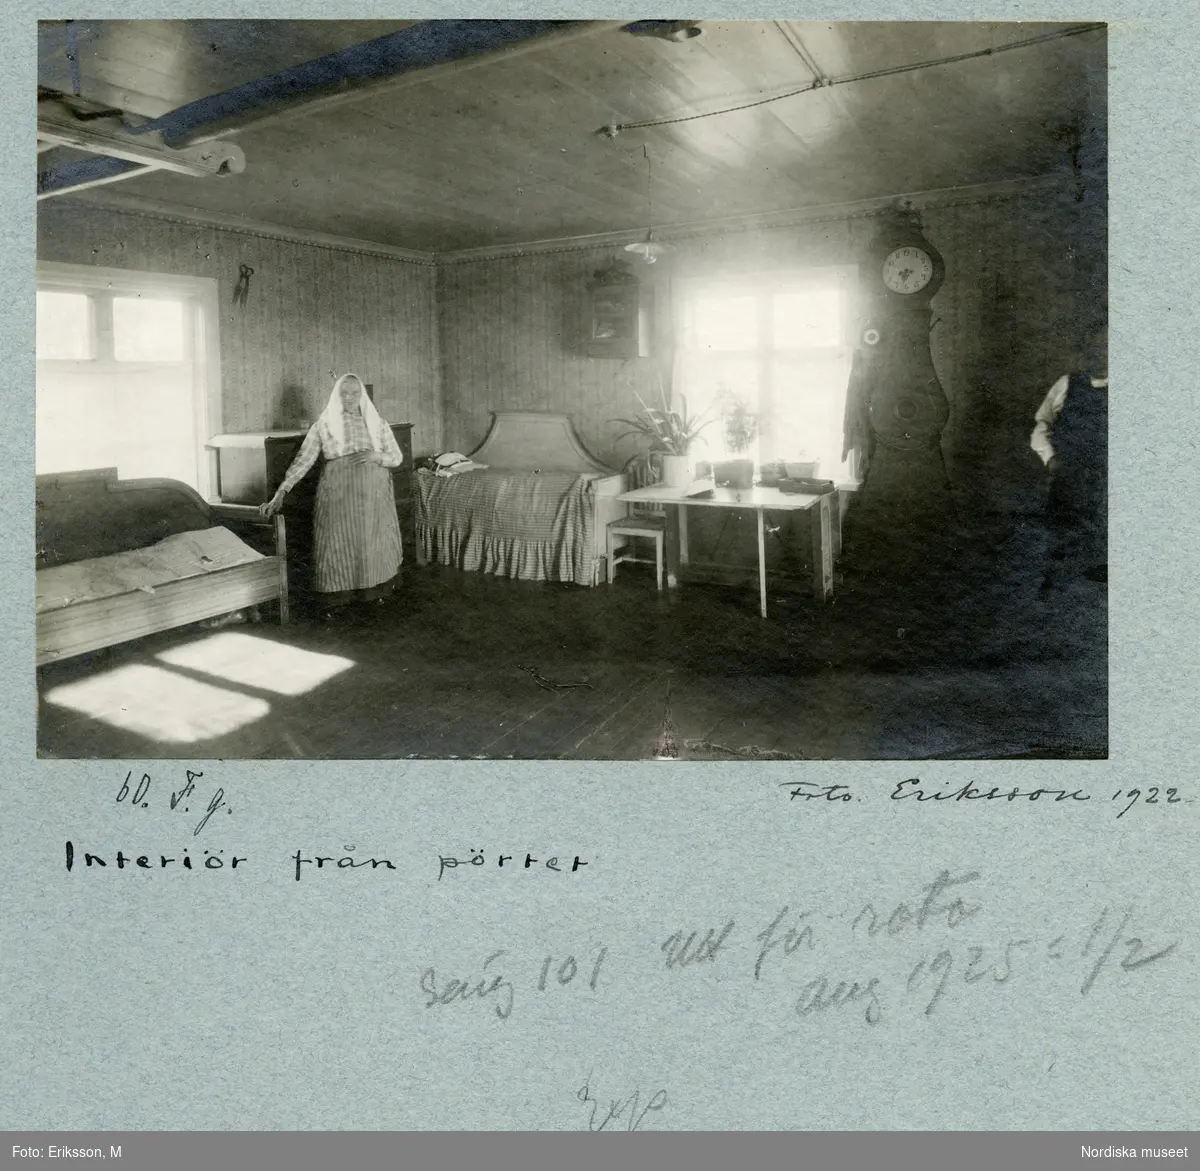 Interiör från pörtet. En kvinna står och håller sig i en av de två sofforna som står längs väggarna. Vid fönstret ett skrivbord och ett golvur.